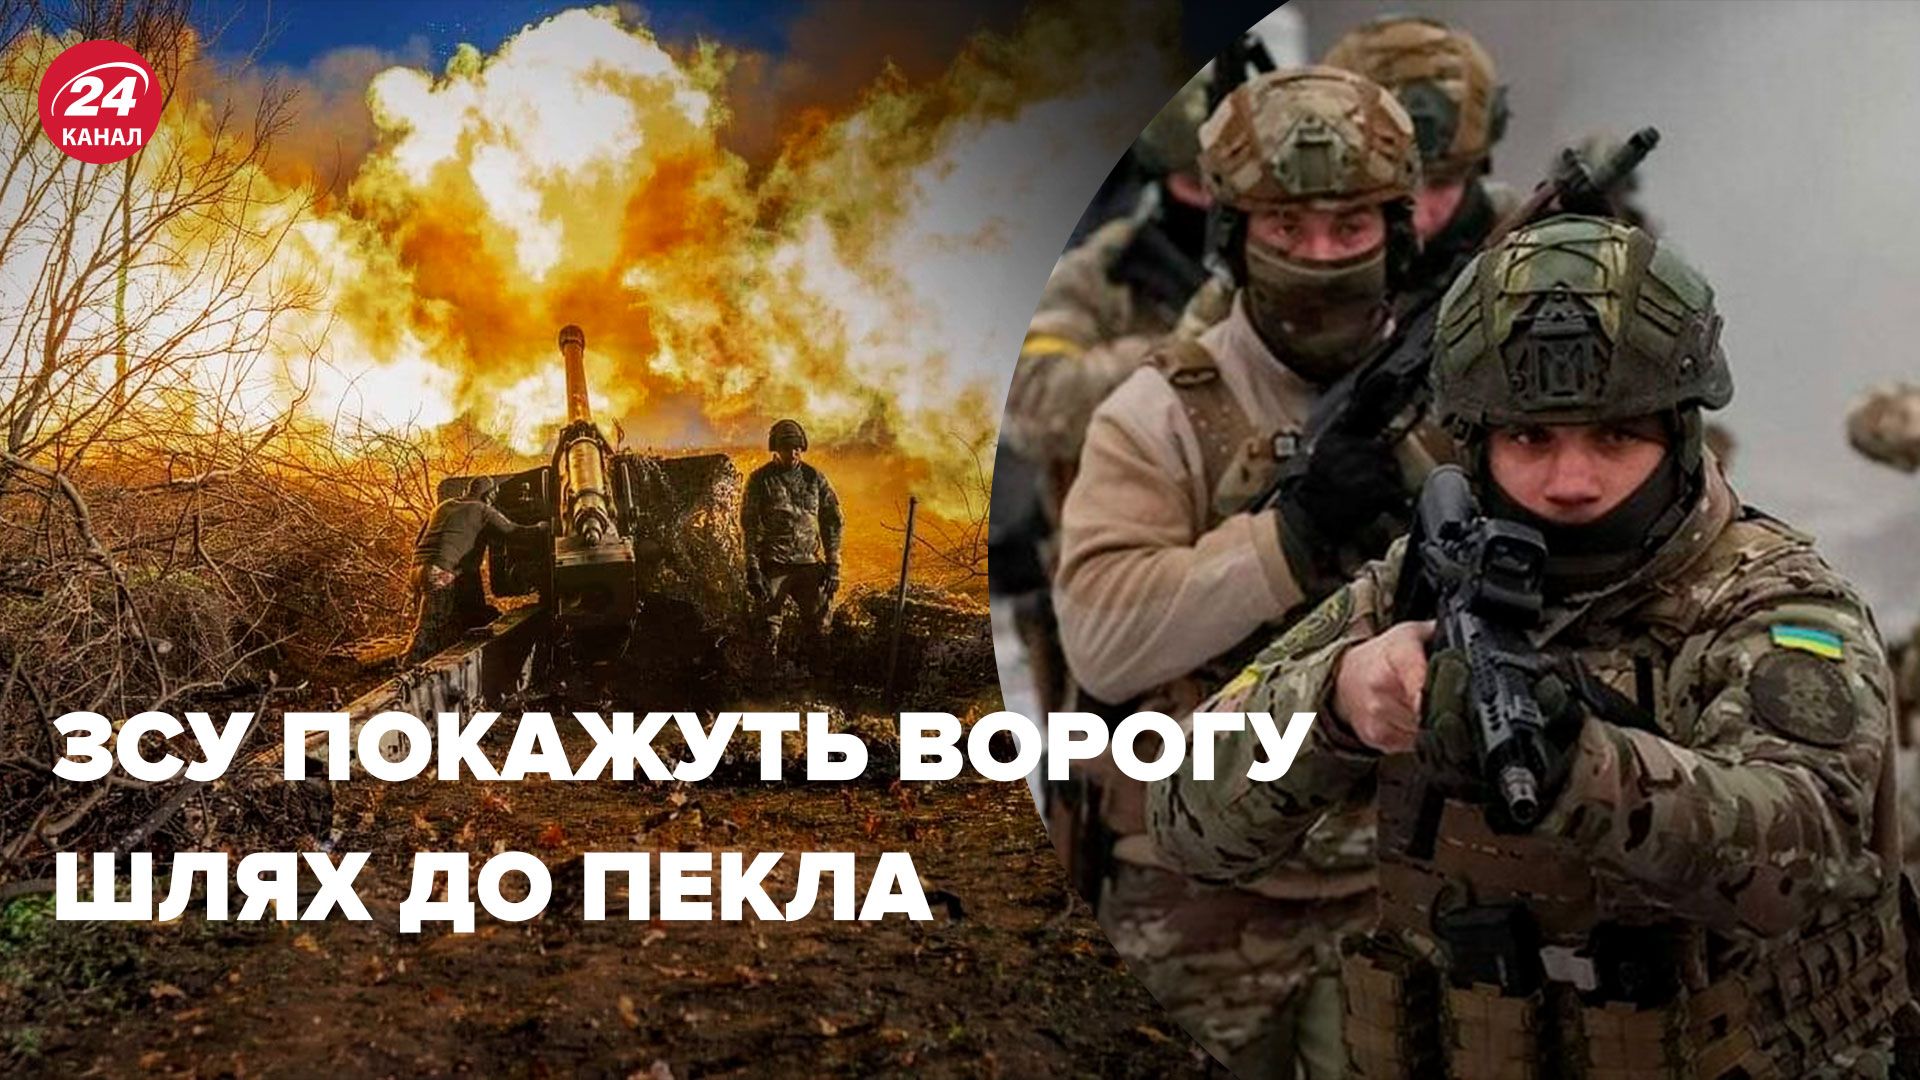 Угроза из Приднестровья - Братчук оценил шансы врага висадить десант - 24 Канал